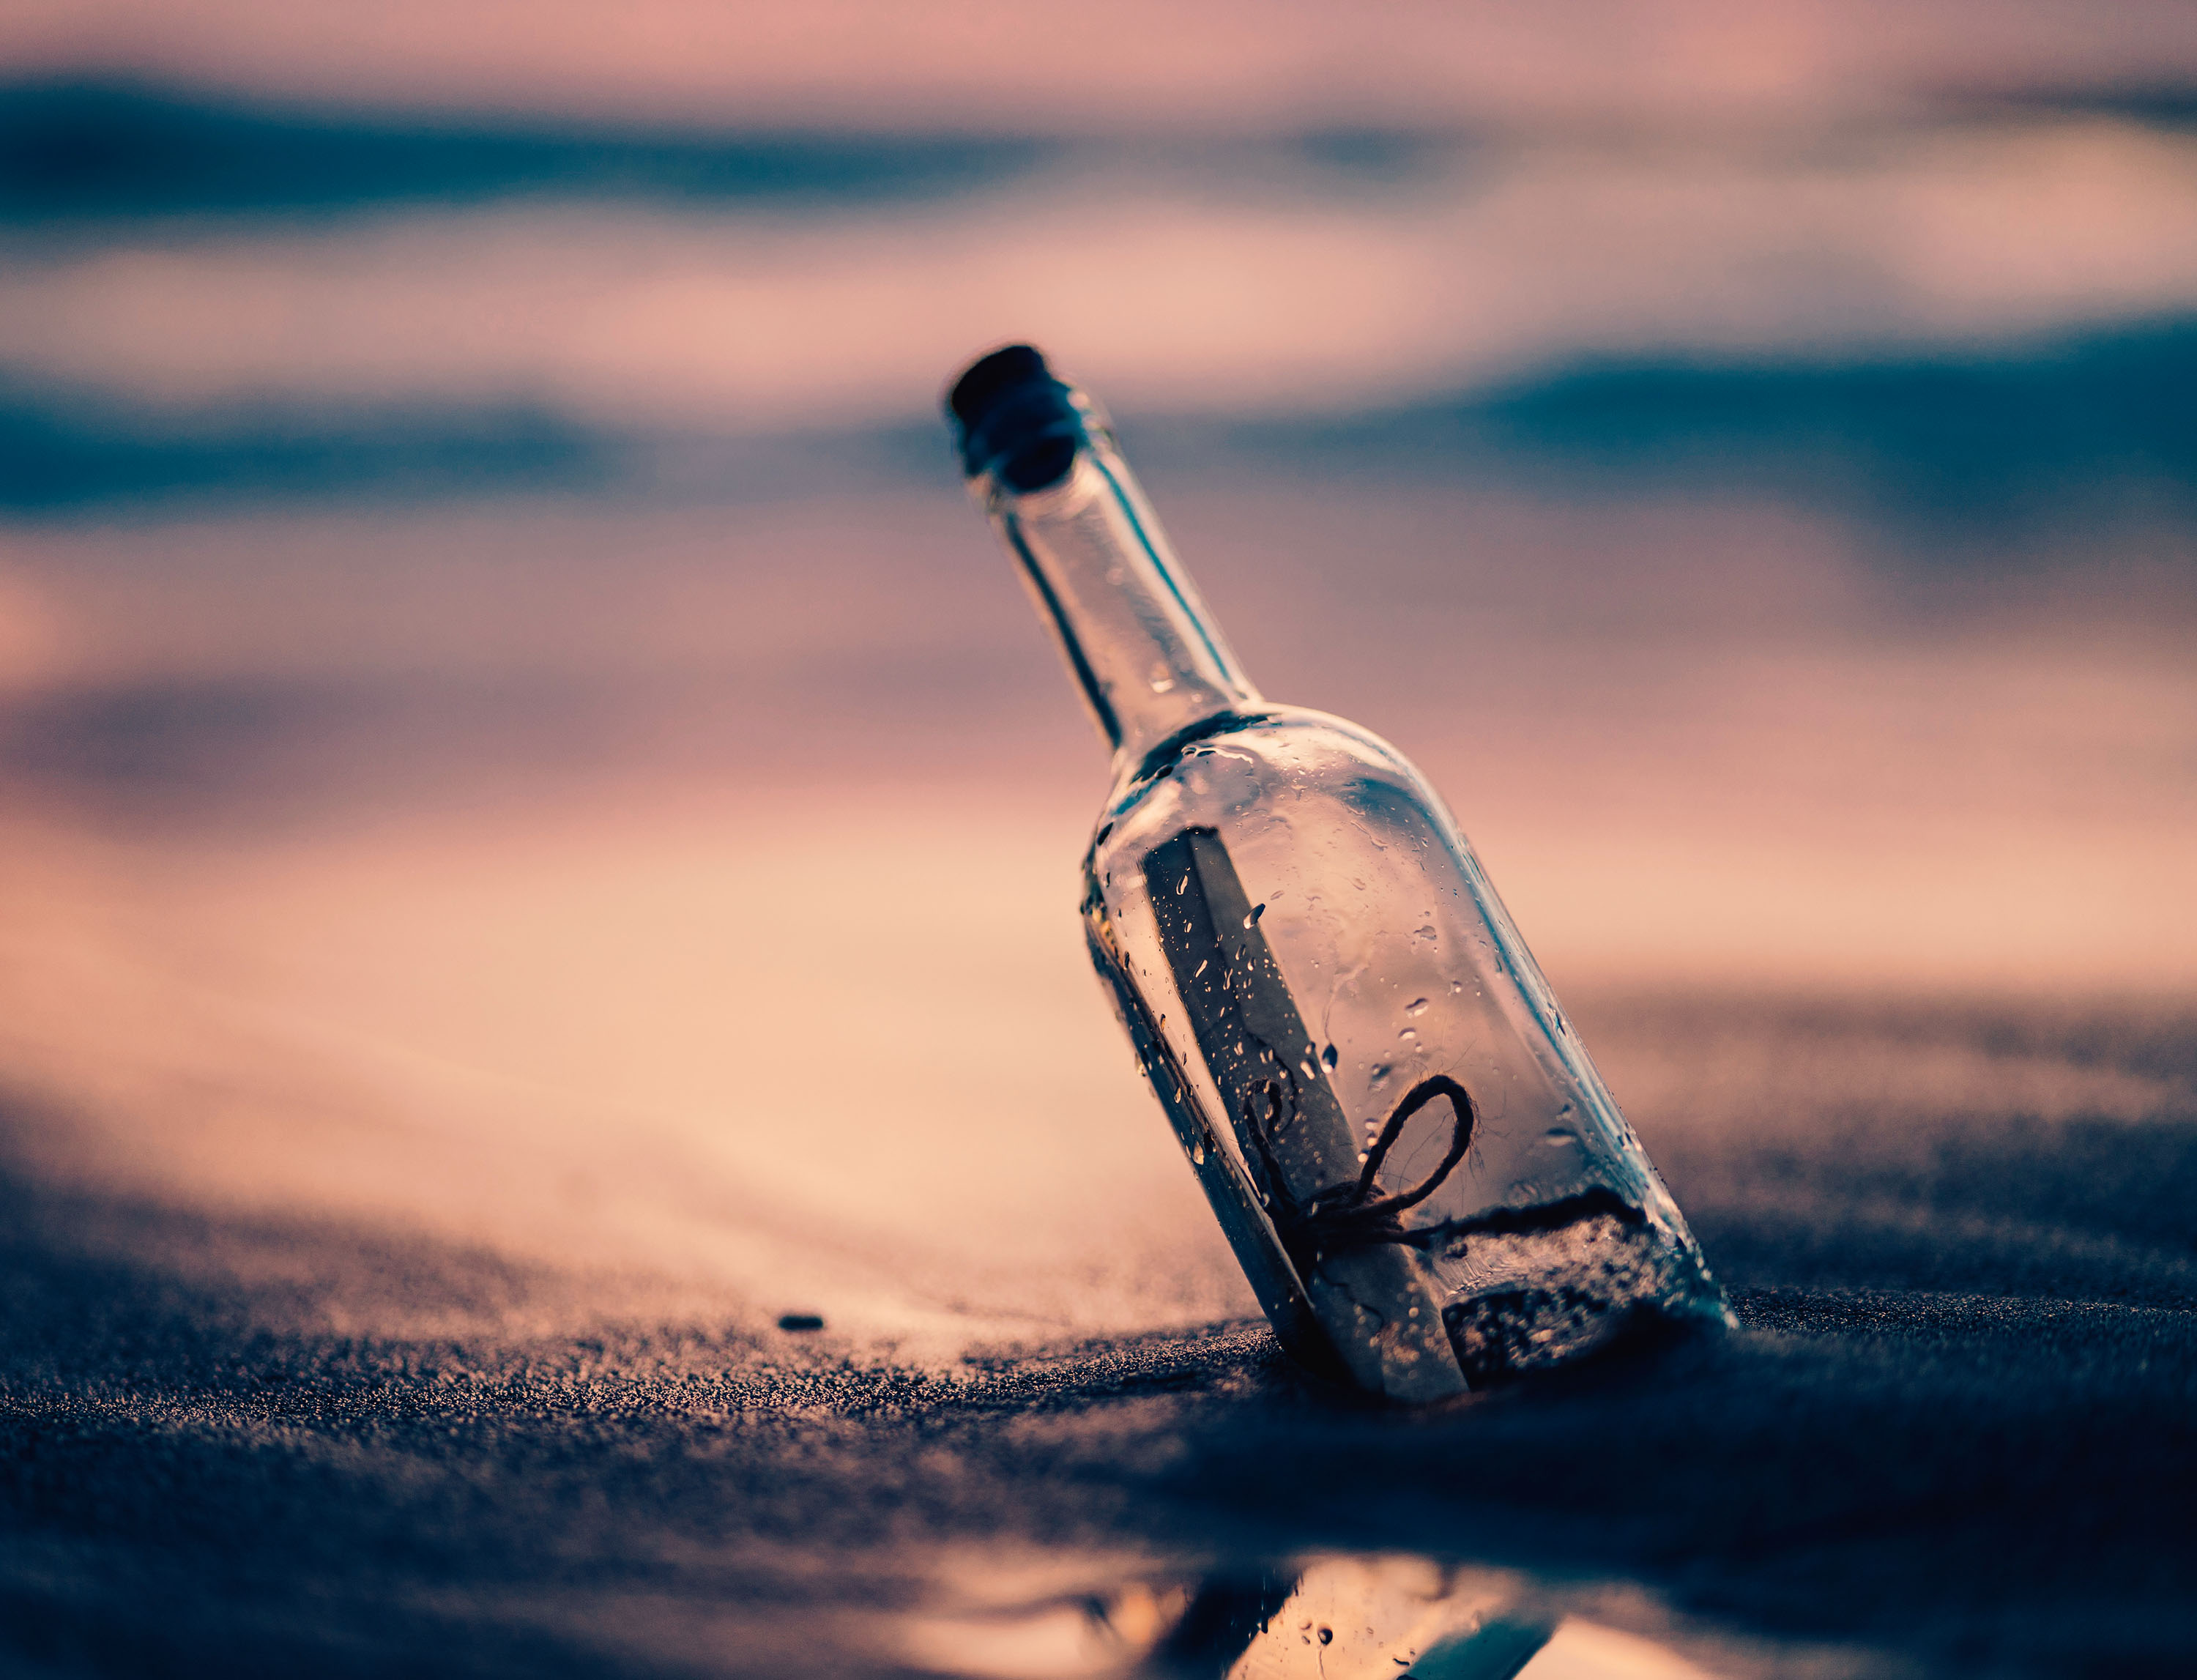 bottle, man made, beach, message